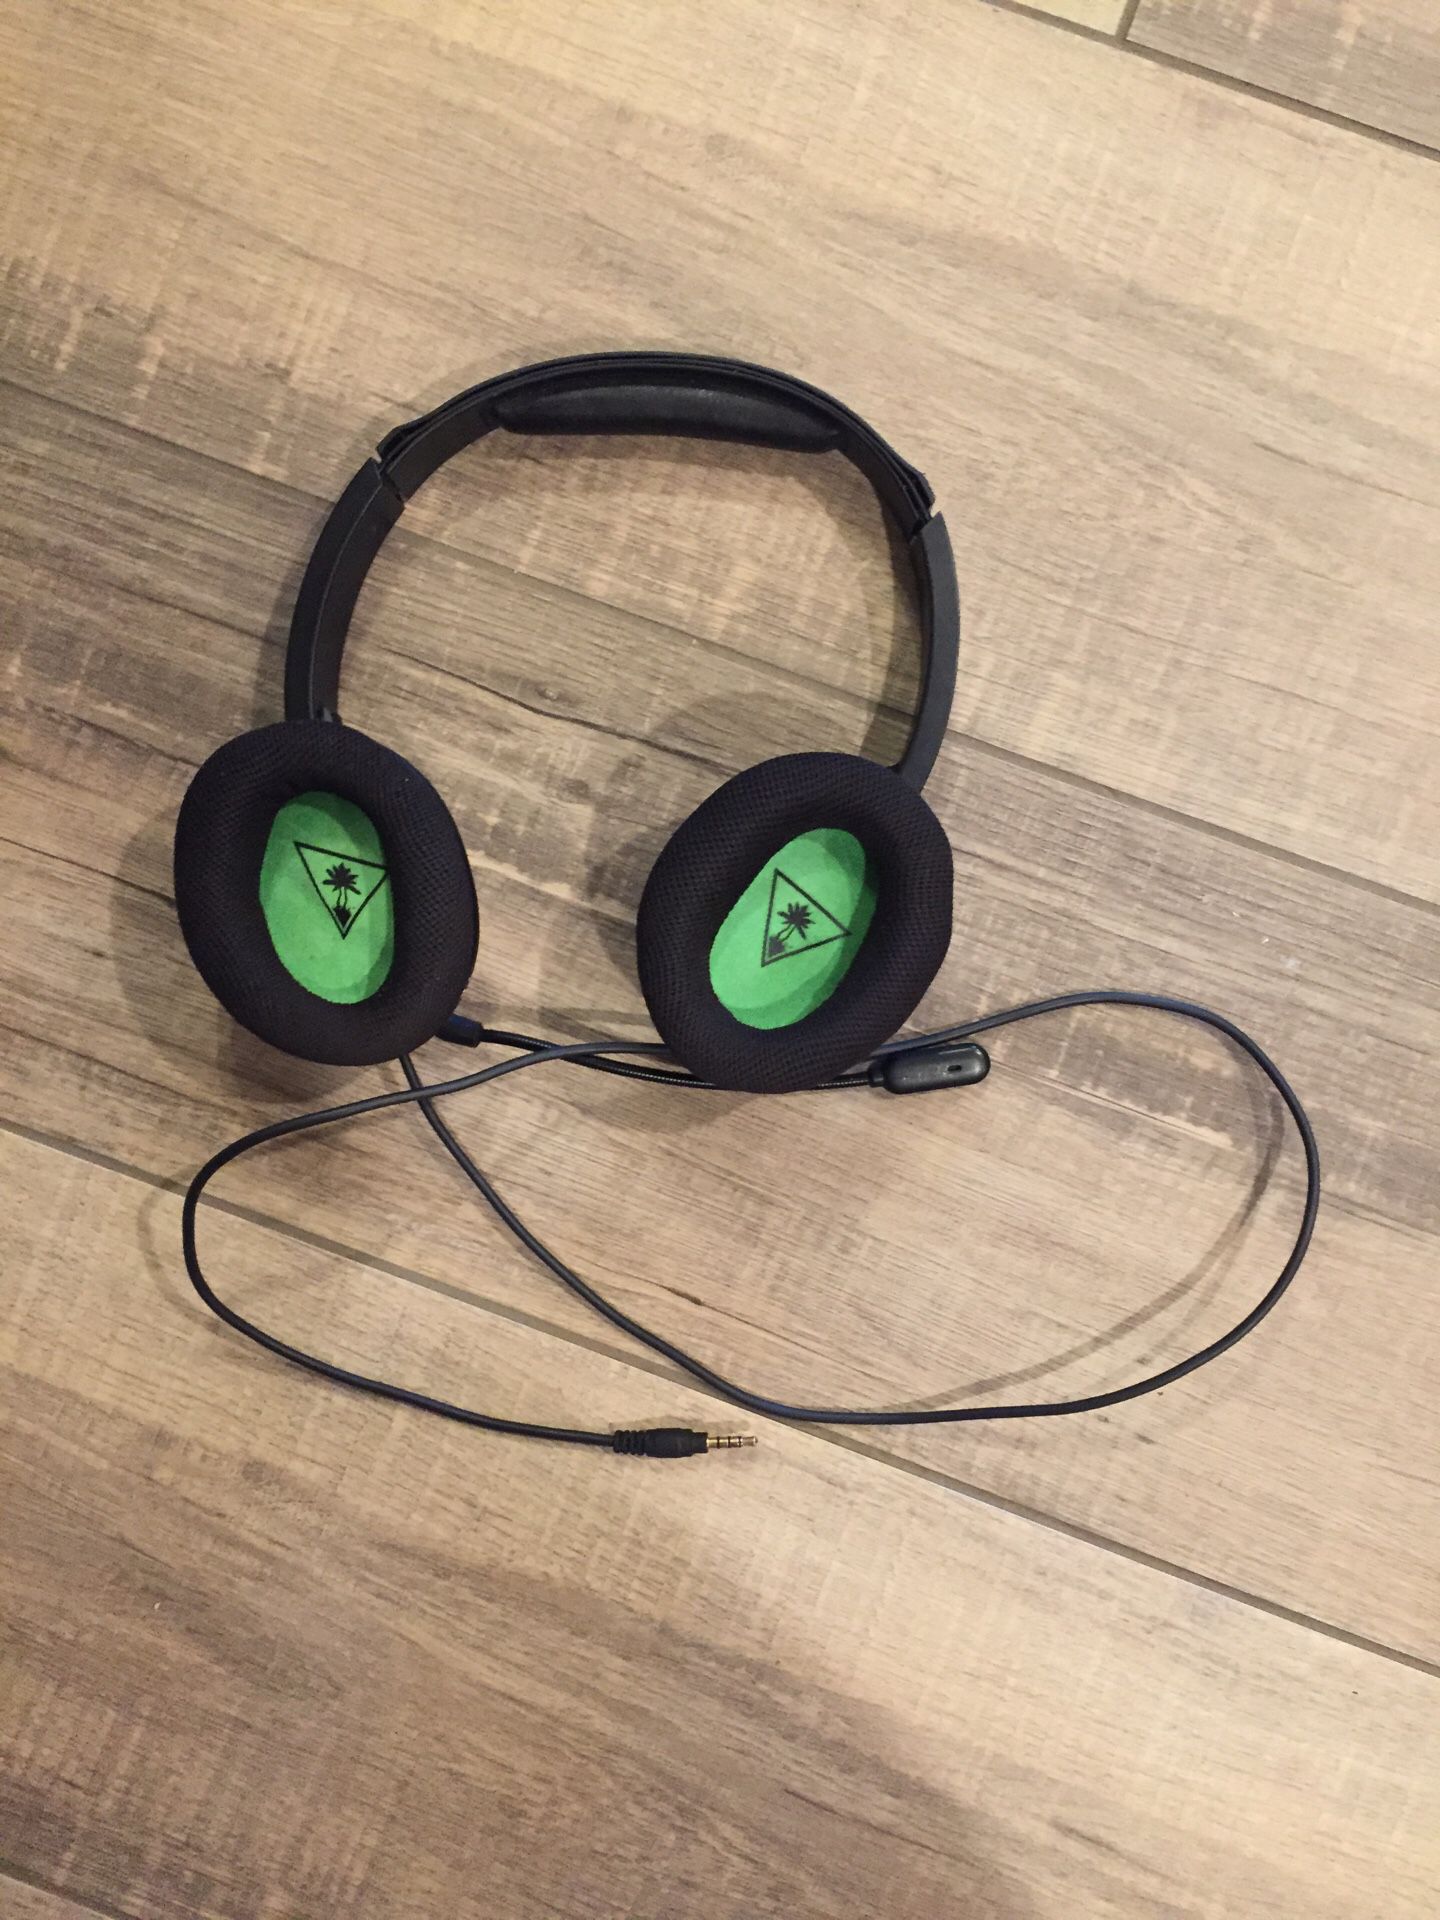 Turtle beach ear force gaming headphones